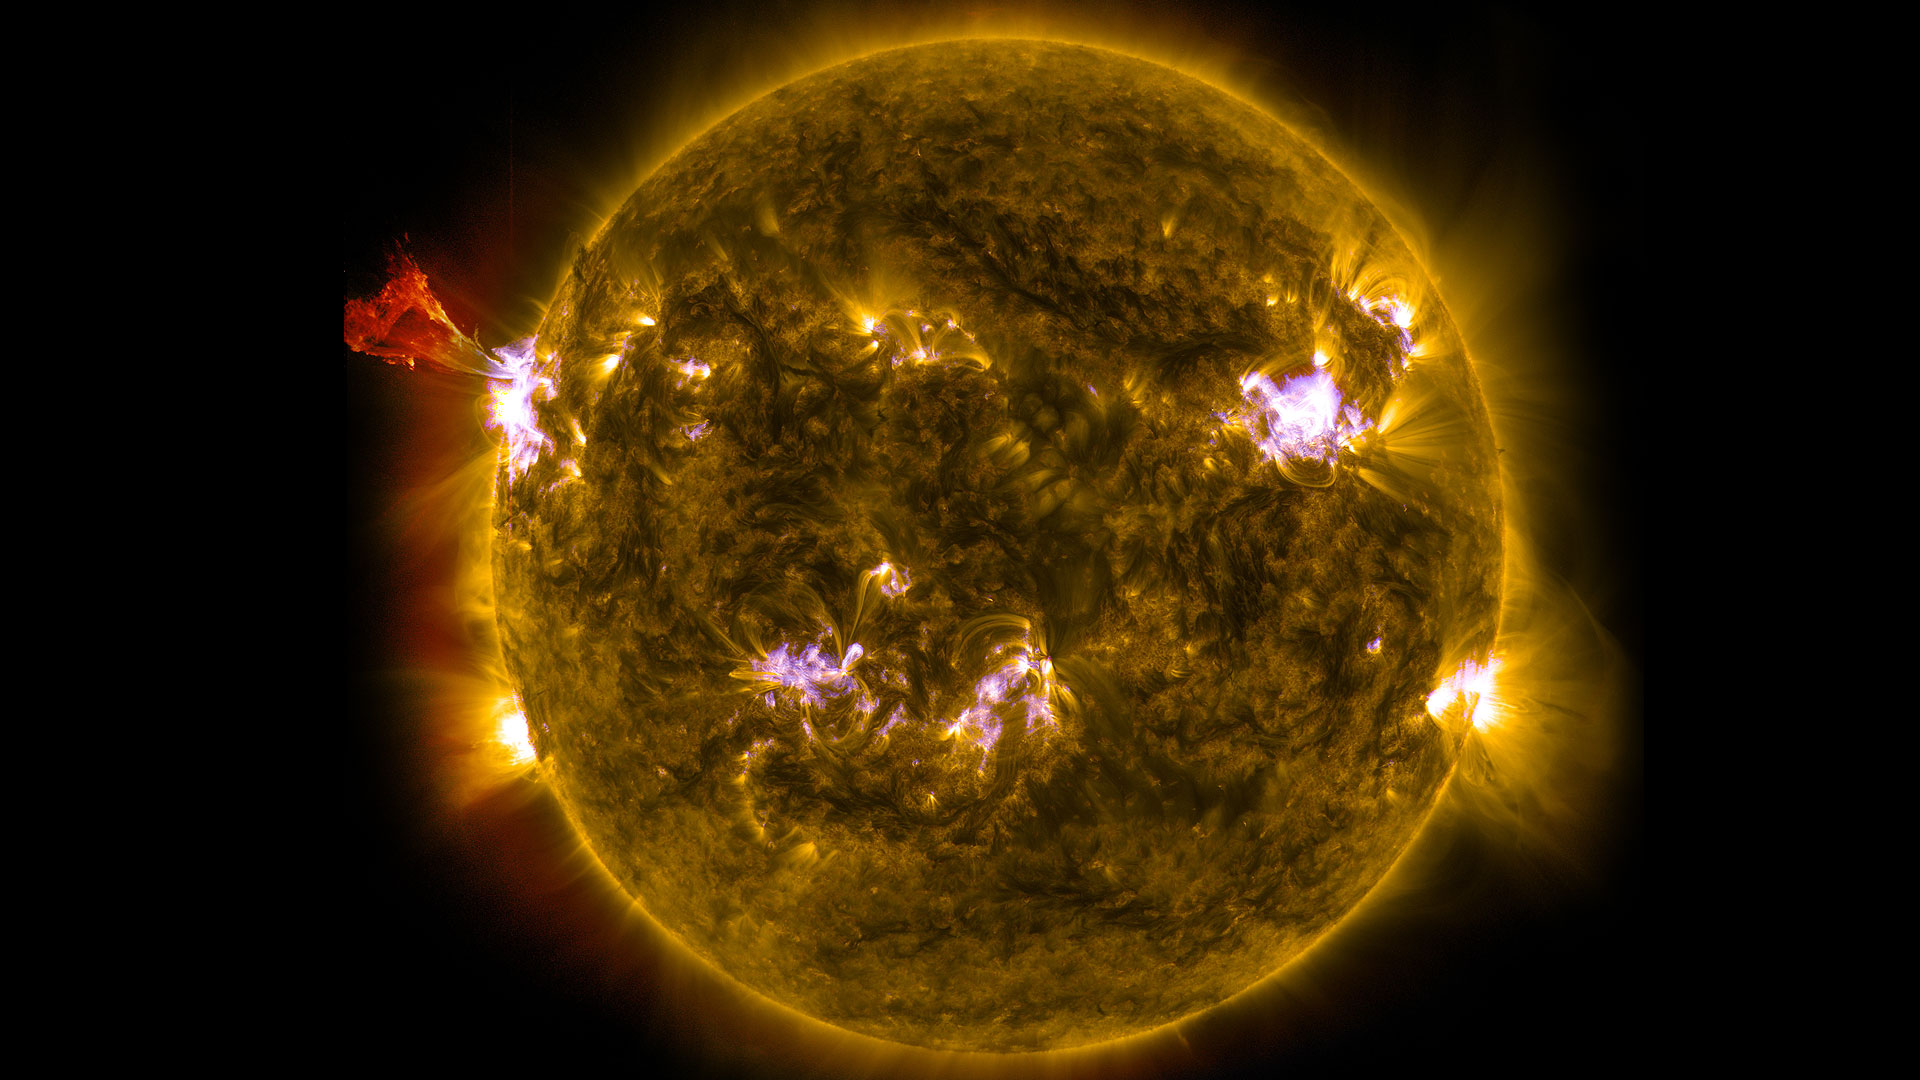 Le Soleil vu par Soho. APOD, 20/06/2004 Image prise par le satellite Soho.